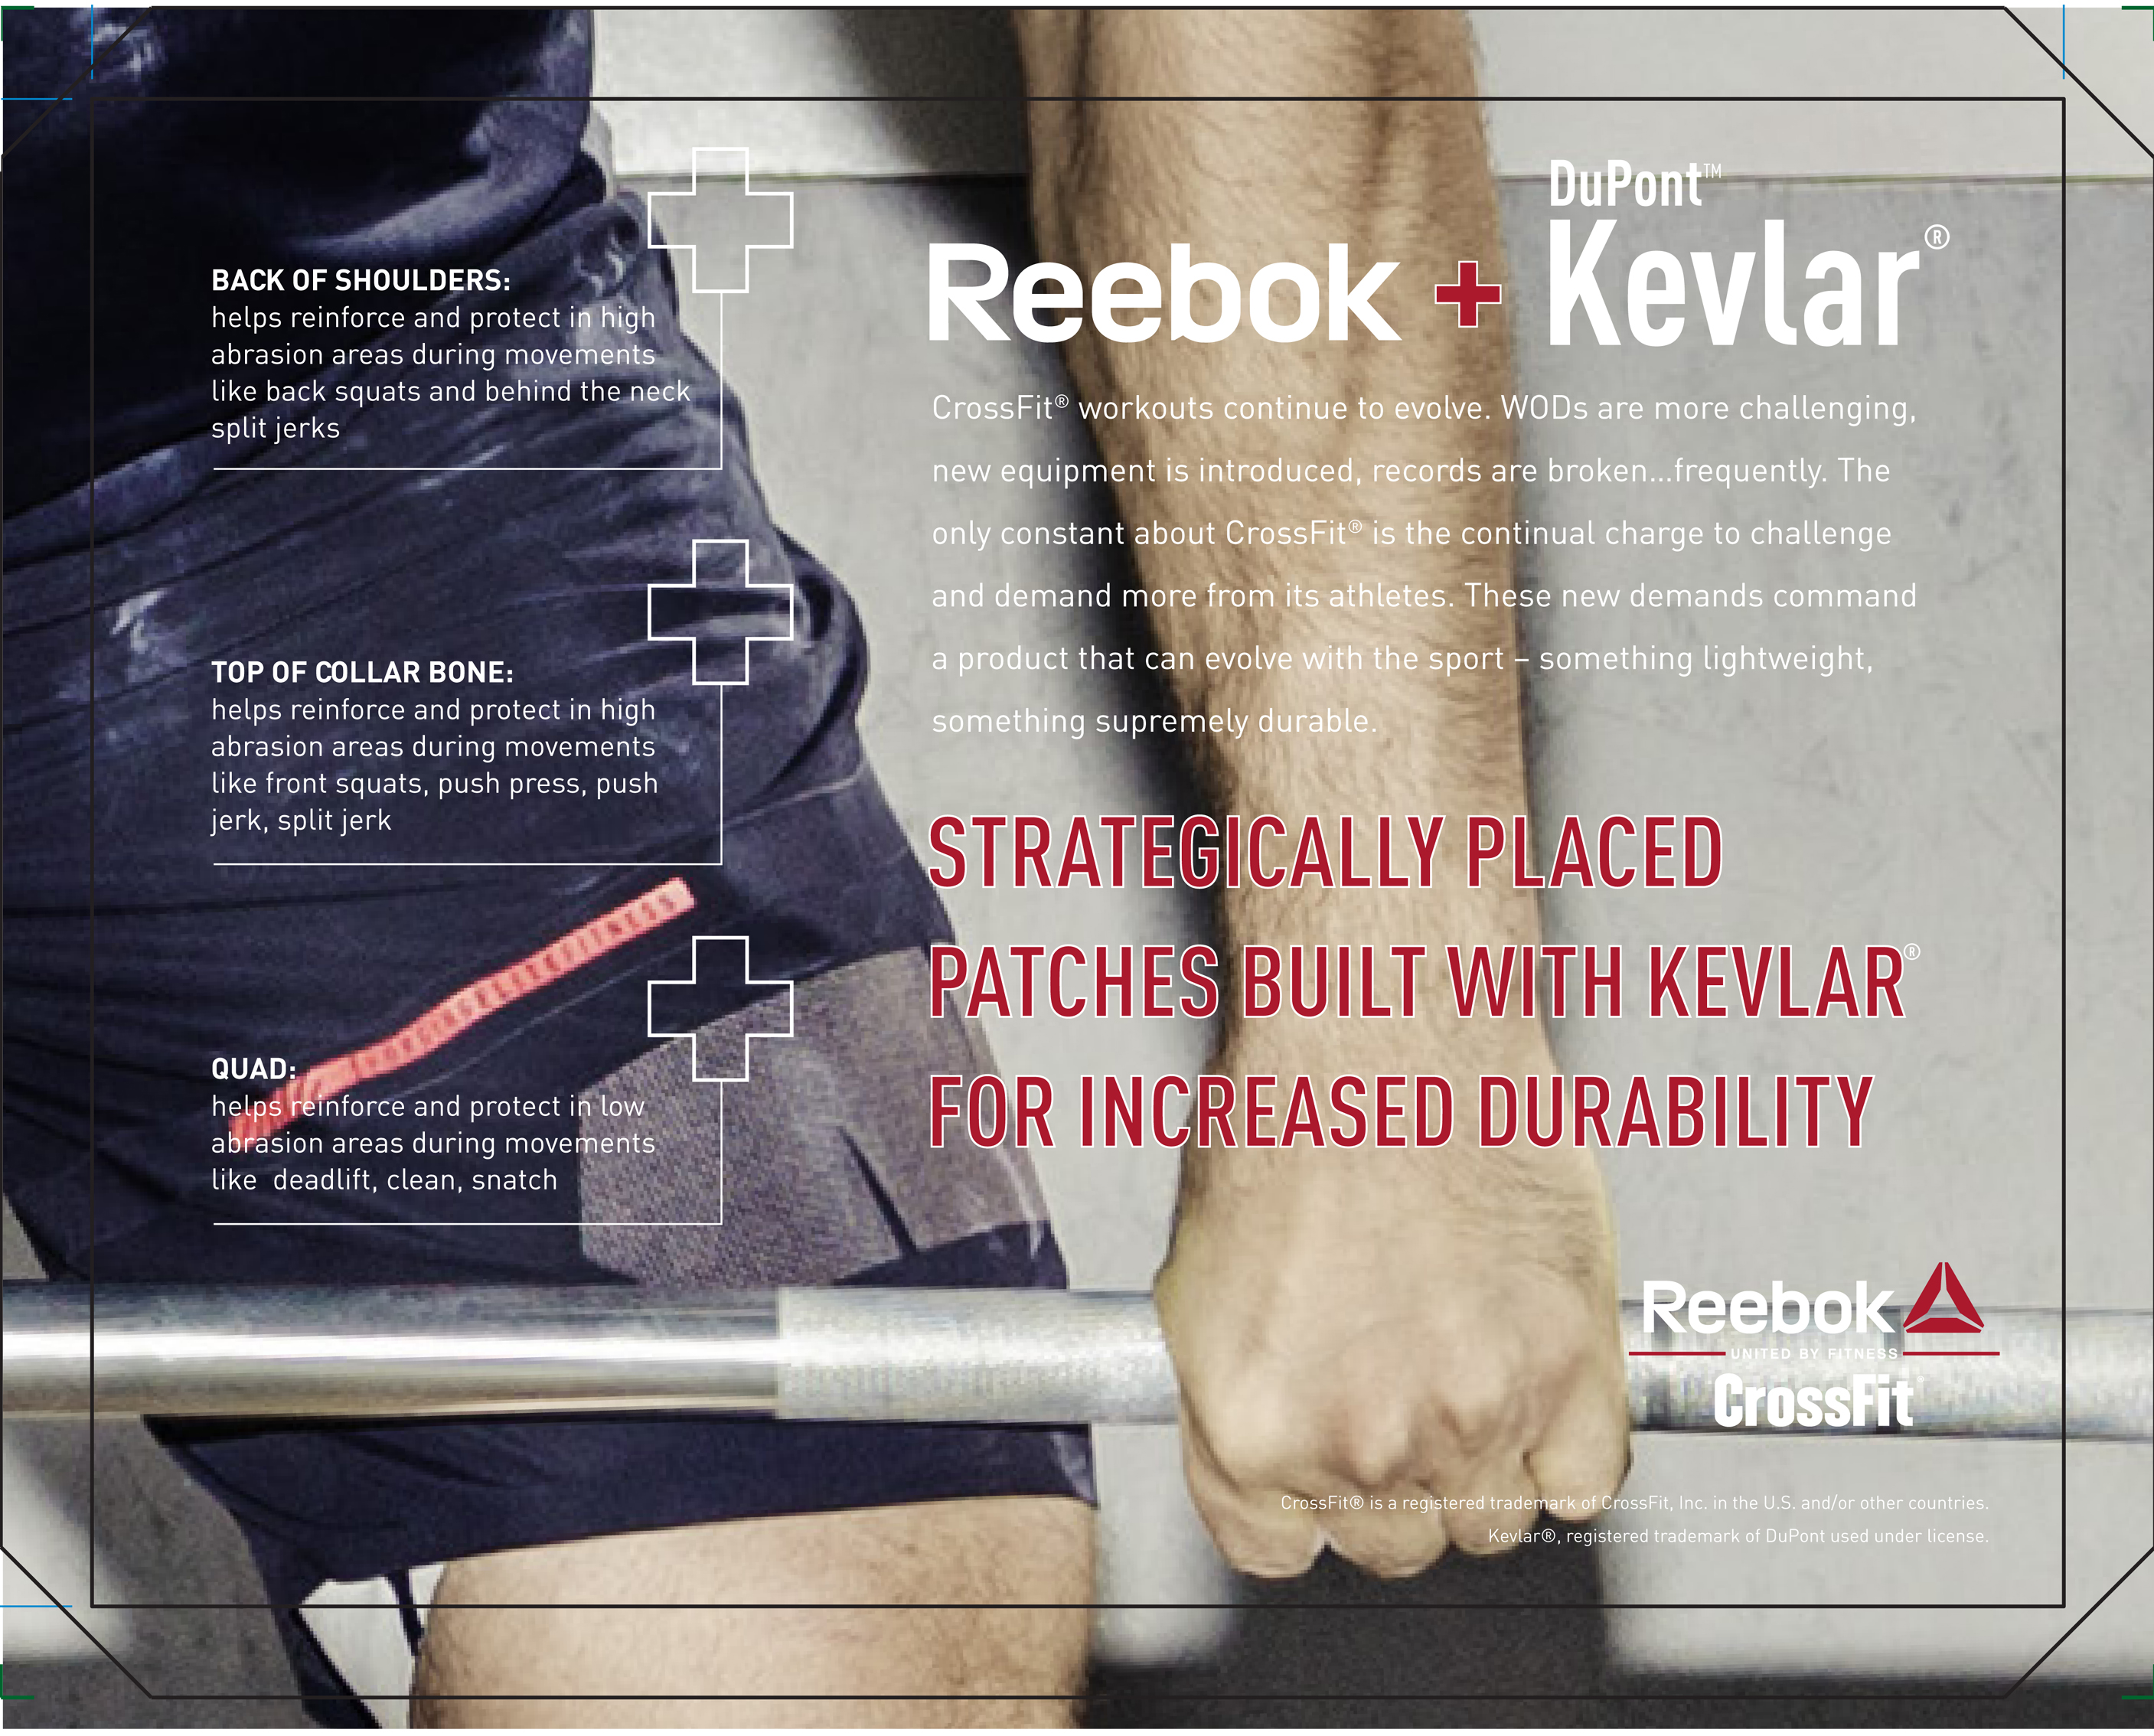 reebok crossfit built with kevlar